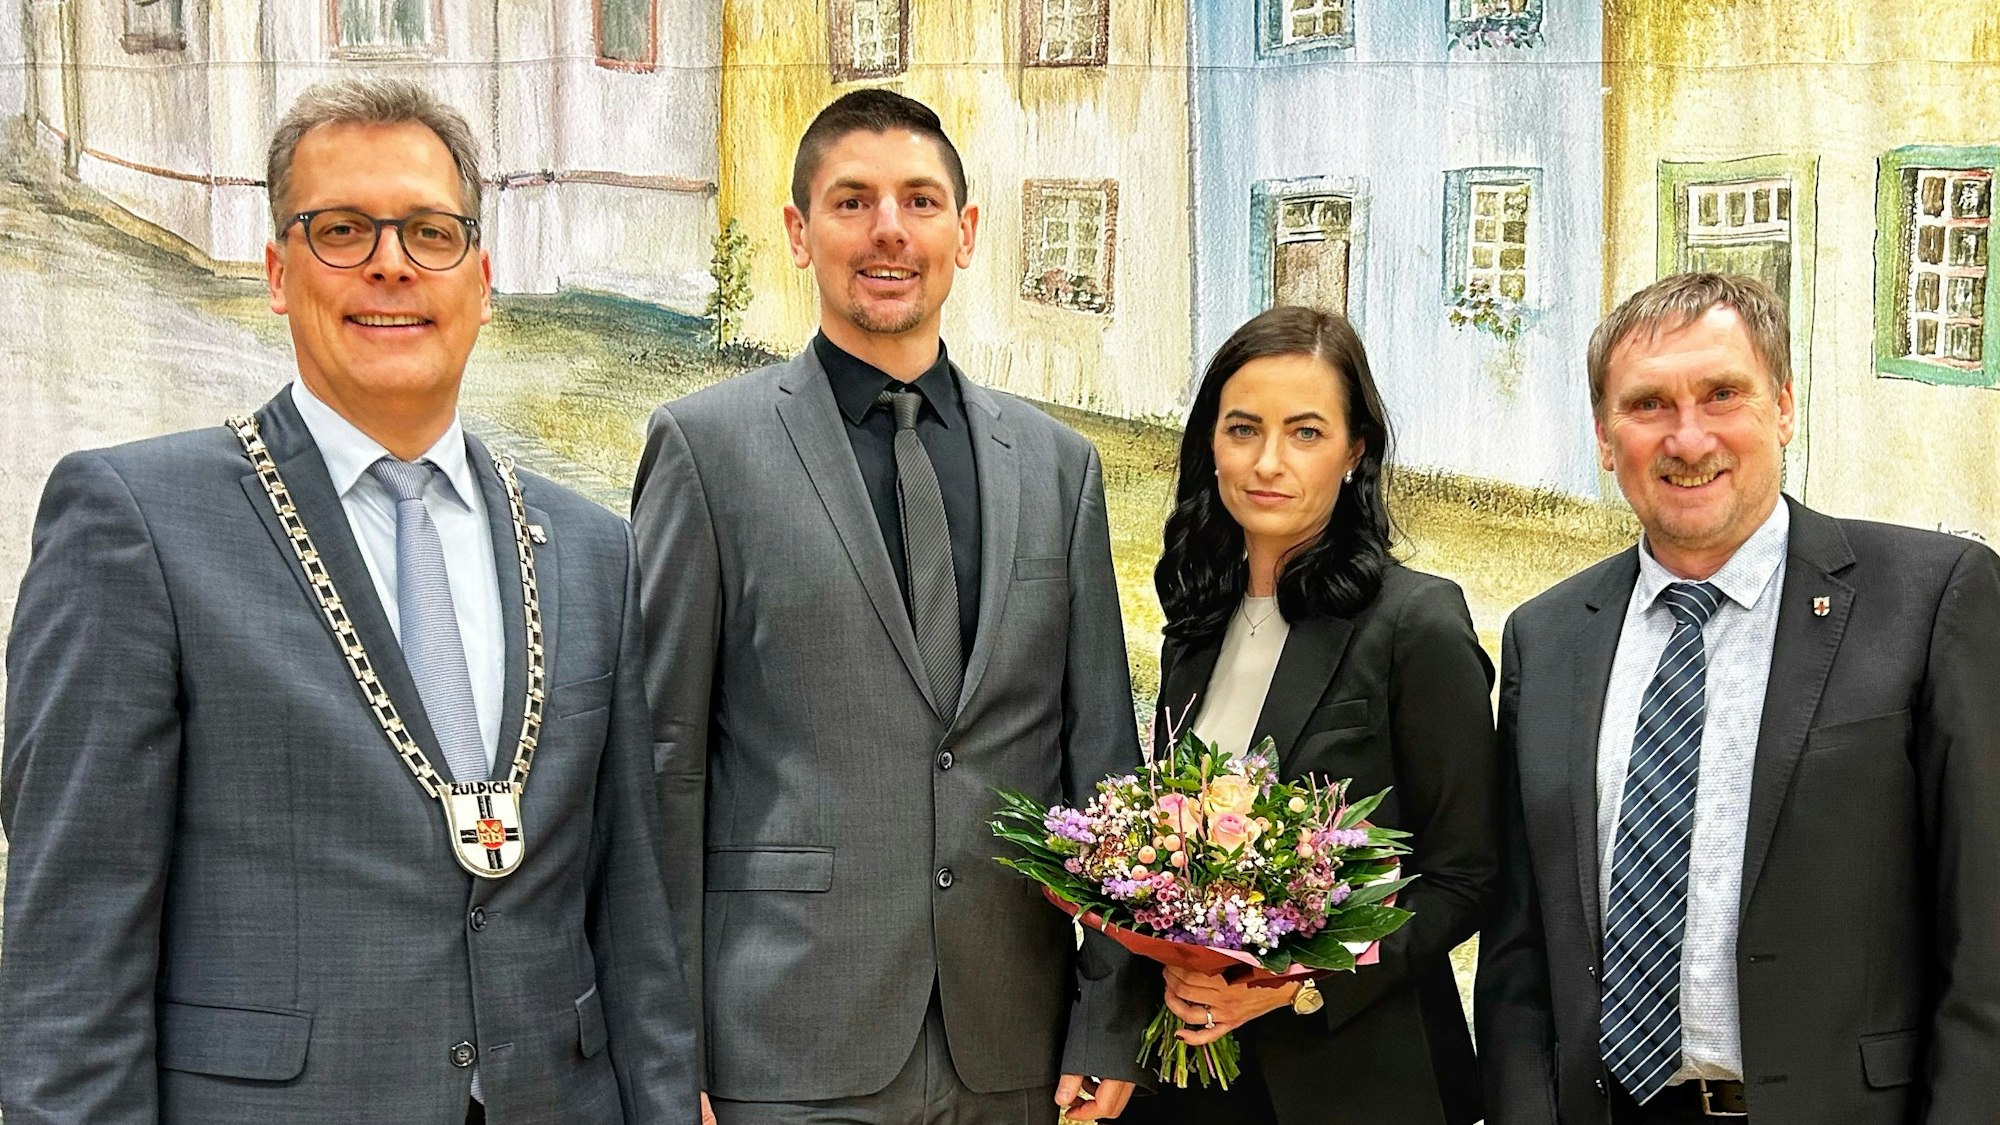 Bürgermeister Ulf Hürtgen (l.) und der scheidende Beigeordnete Ottmar Voigt (r.) gratulierten Michael Höhn – hier mit Gattin Nadine – zur Wahl zum Allgemeinen Vertreter des Bürgermeisters der Stadt Zülpich.